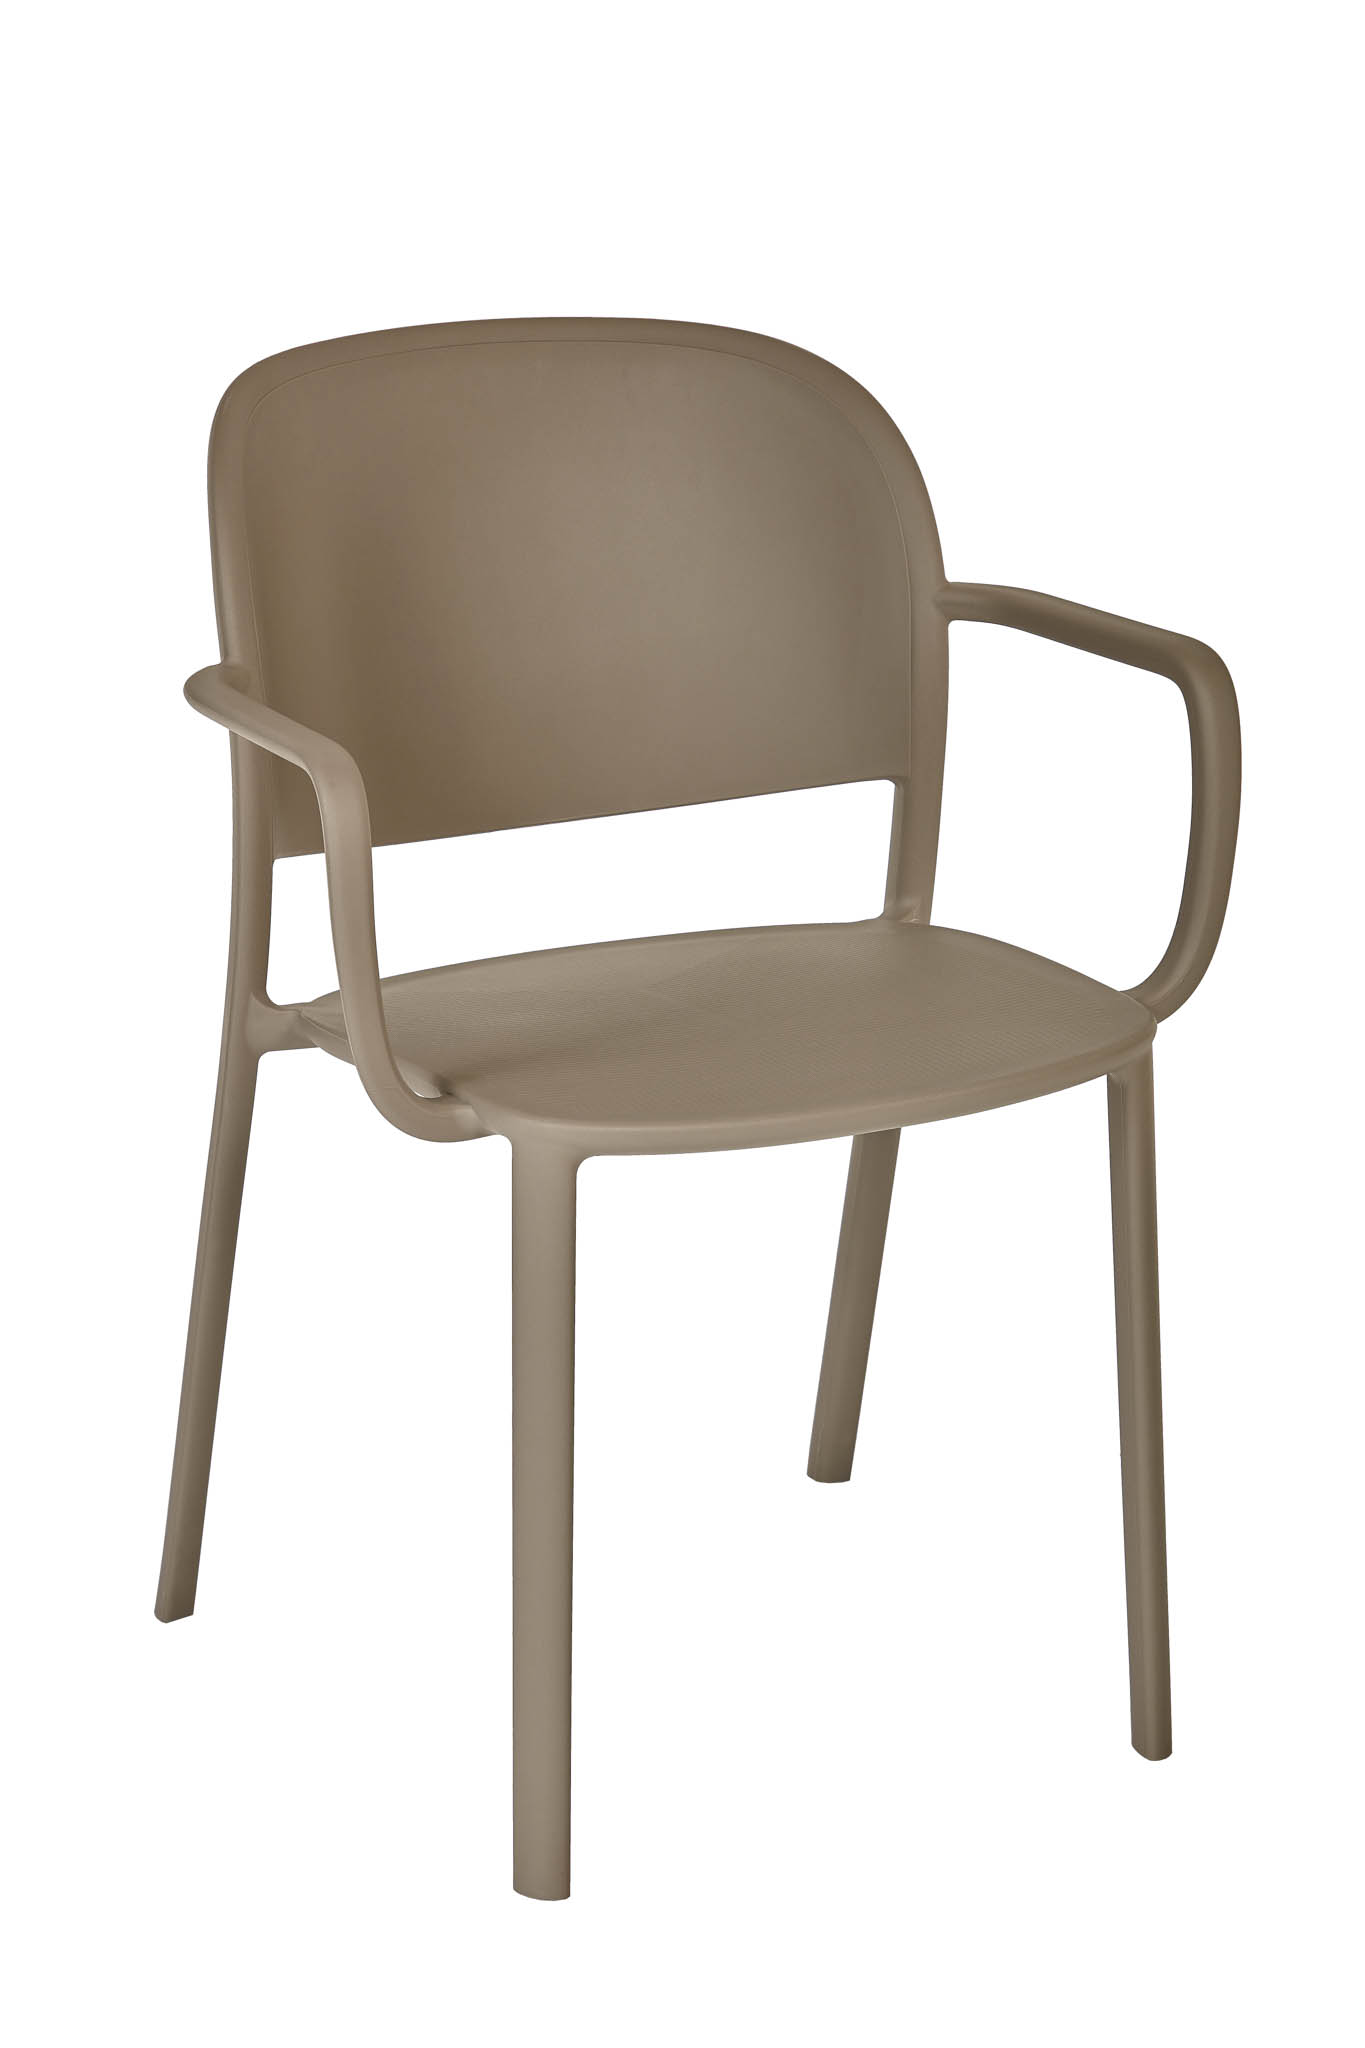 AD hotelska oprema Fotelja 01 - Taupe boje slika proizvoda